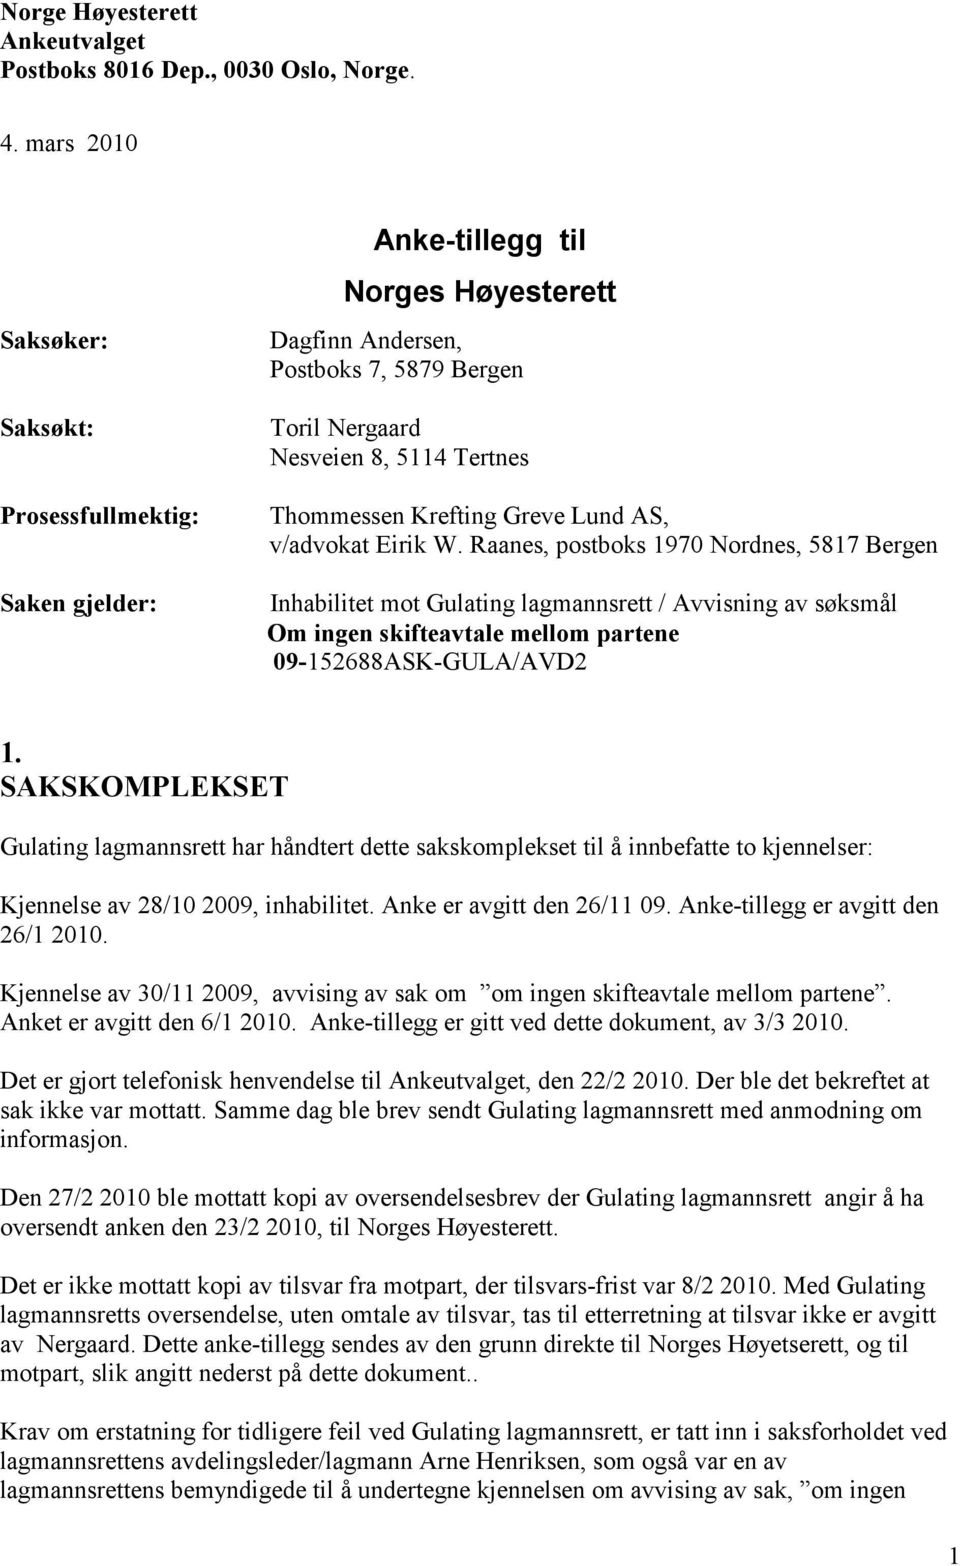 Anke-tillegg til Norges Høyesterett - PDF Gratis nedlasting